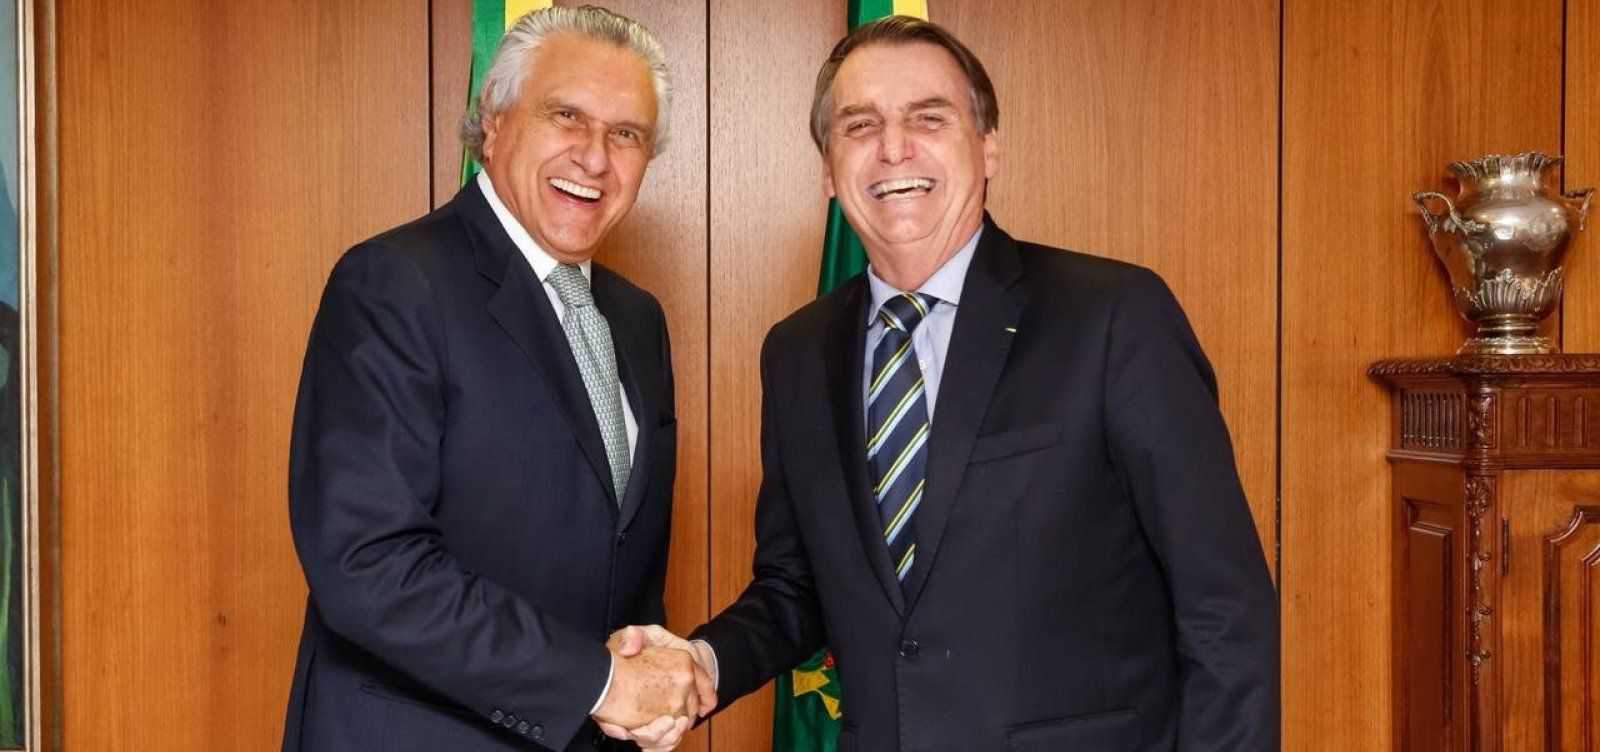 <p>Caiado y Bolsonaro antes del coronavirus</p>